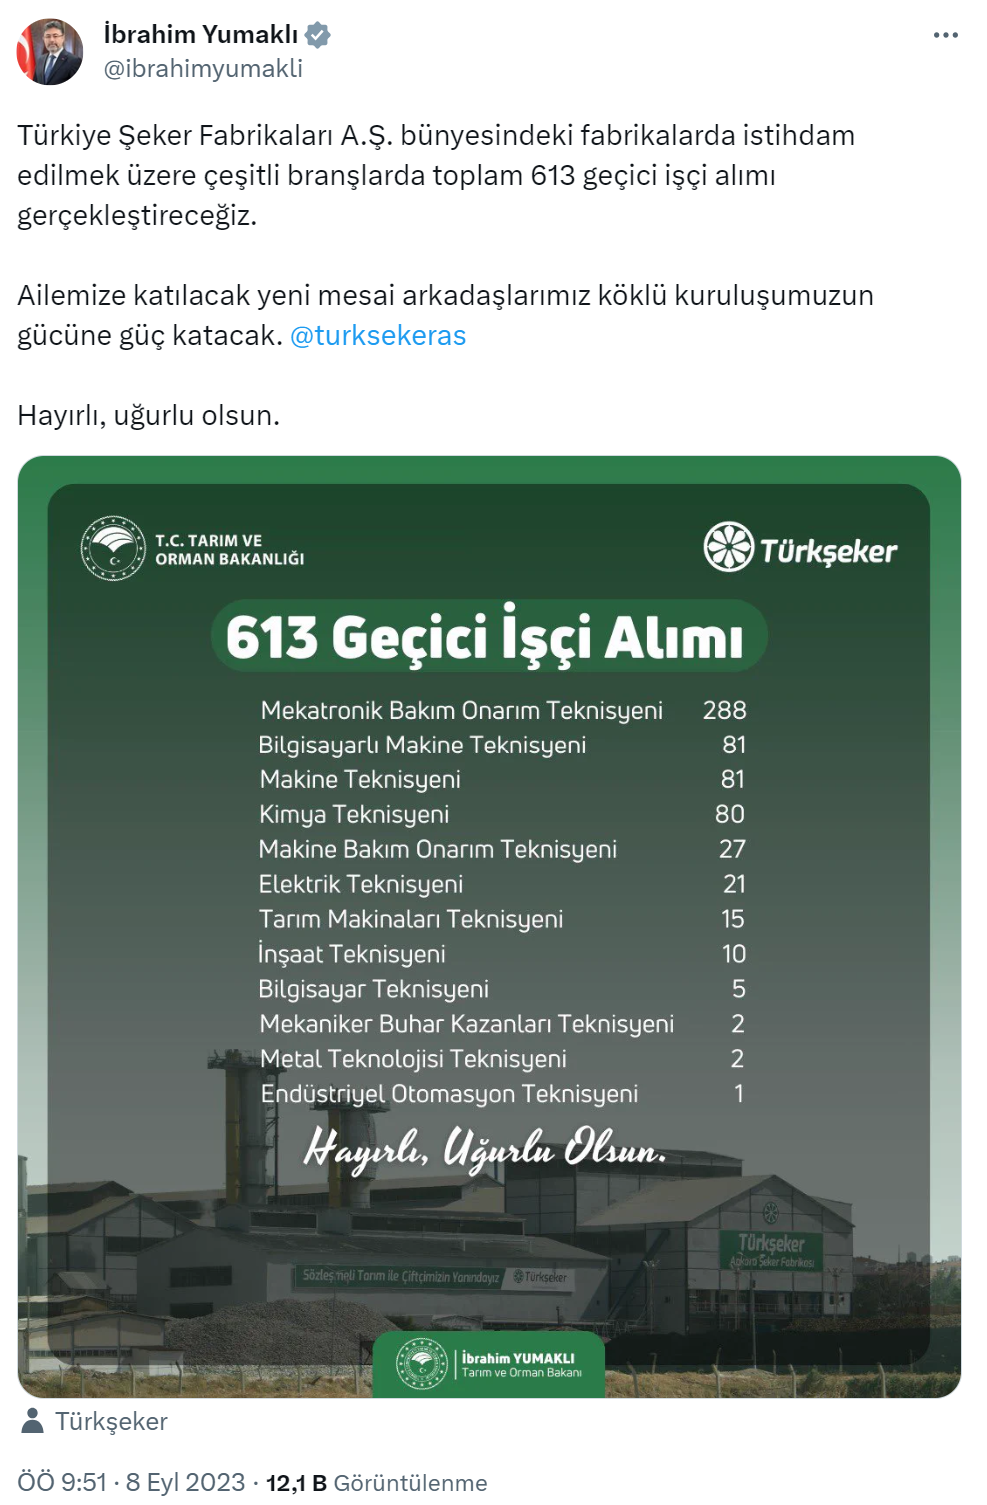 Türkiye Şeker Fabrikaları’na 613 geçici işçi alımı yapılacak